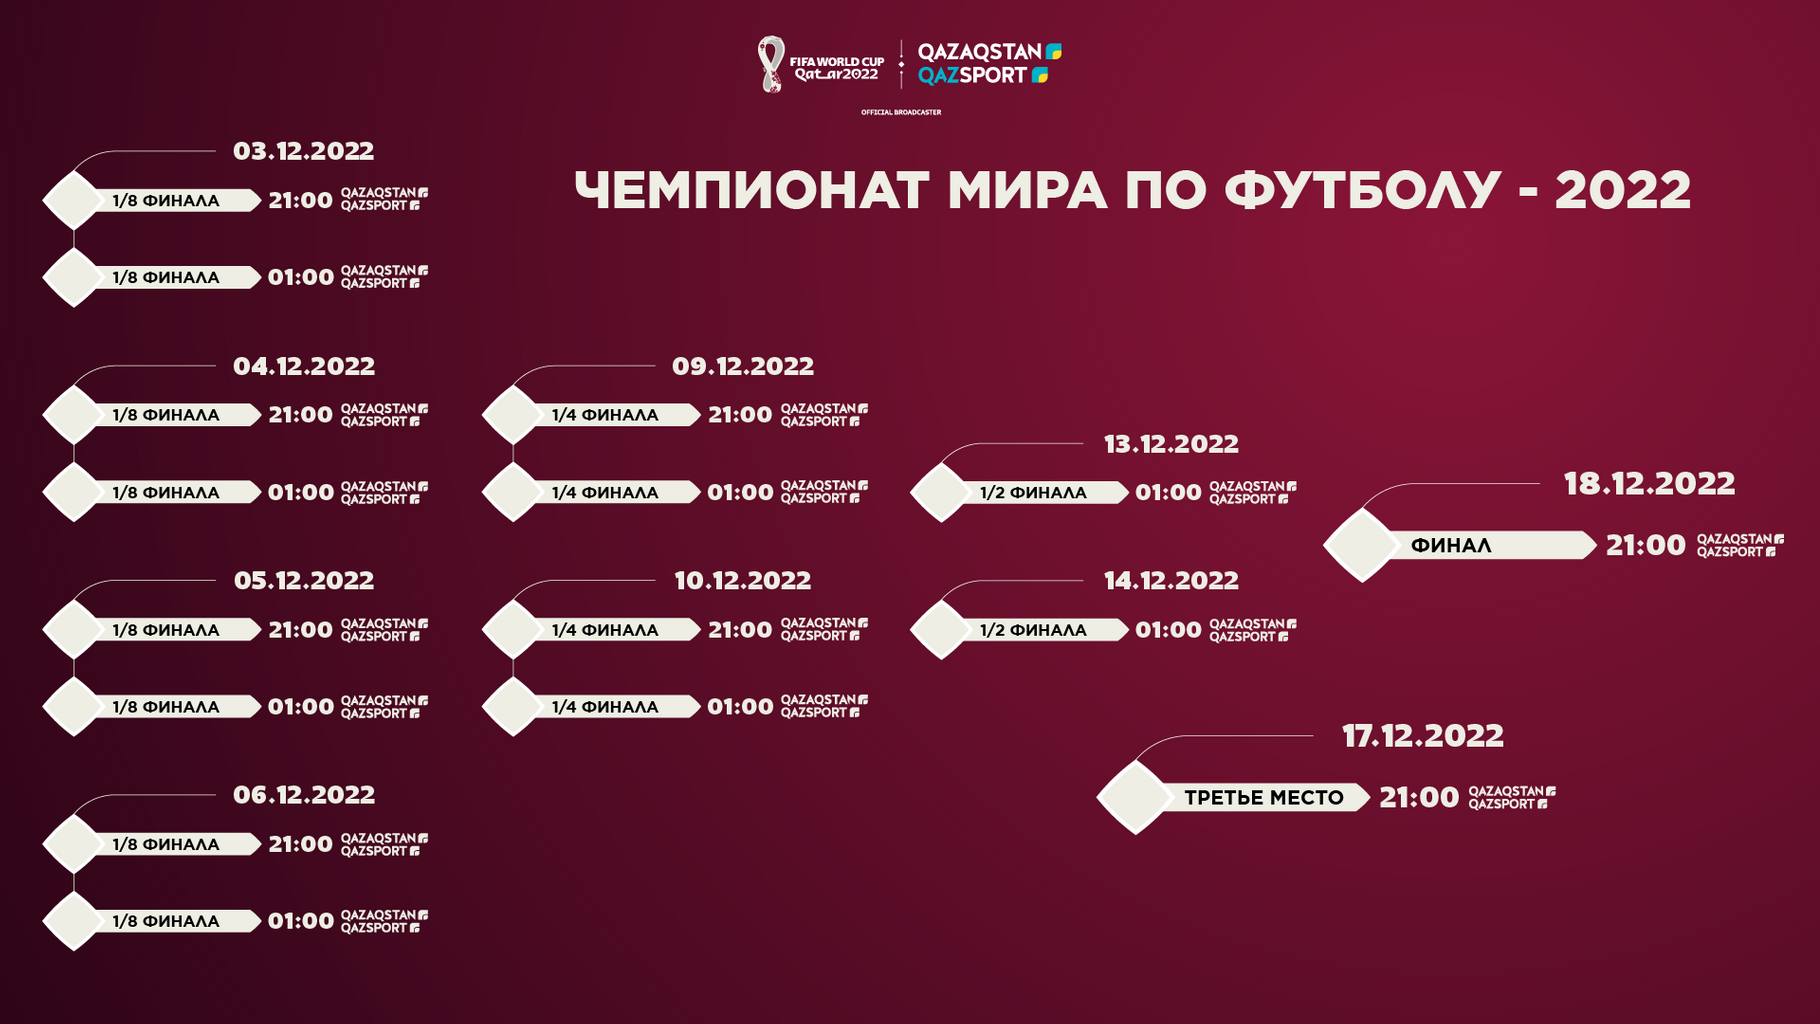 Футбол таблица игр 2022. Турнирная сетка ЧМ по футболу.